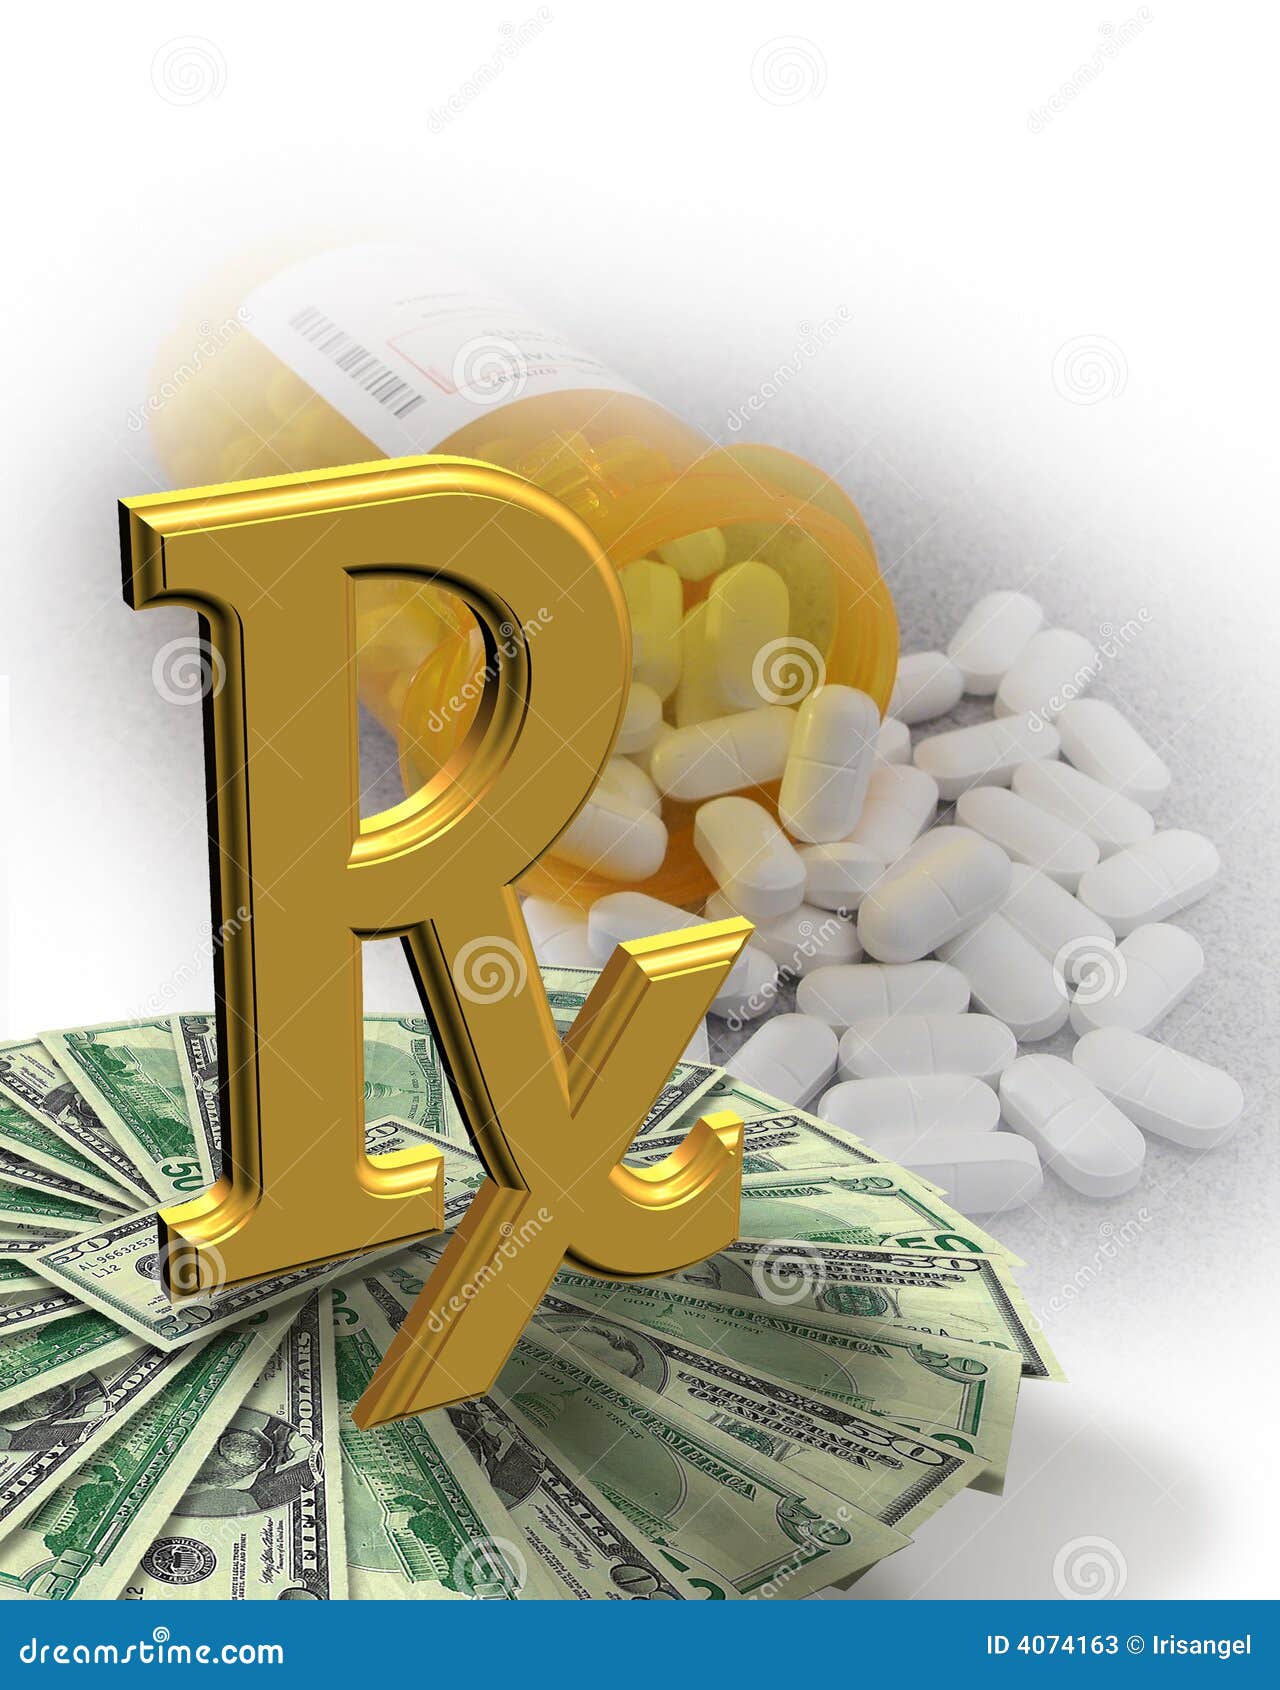 υψηλά χάπια χρημάτων ιατρική&si. η σύνθεση κύκλων κόστισε στα φάρμακα την υψηλή συνταγή χαπιών χρημάτων ιατρικής εικόνας απεικόνισης που αντιπροσωπεύει το σύμβολο